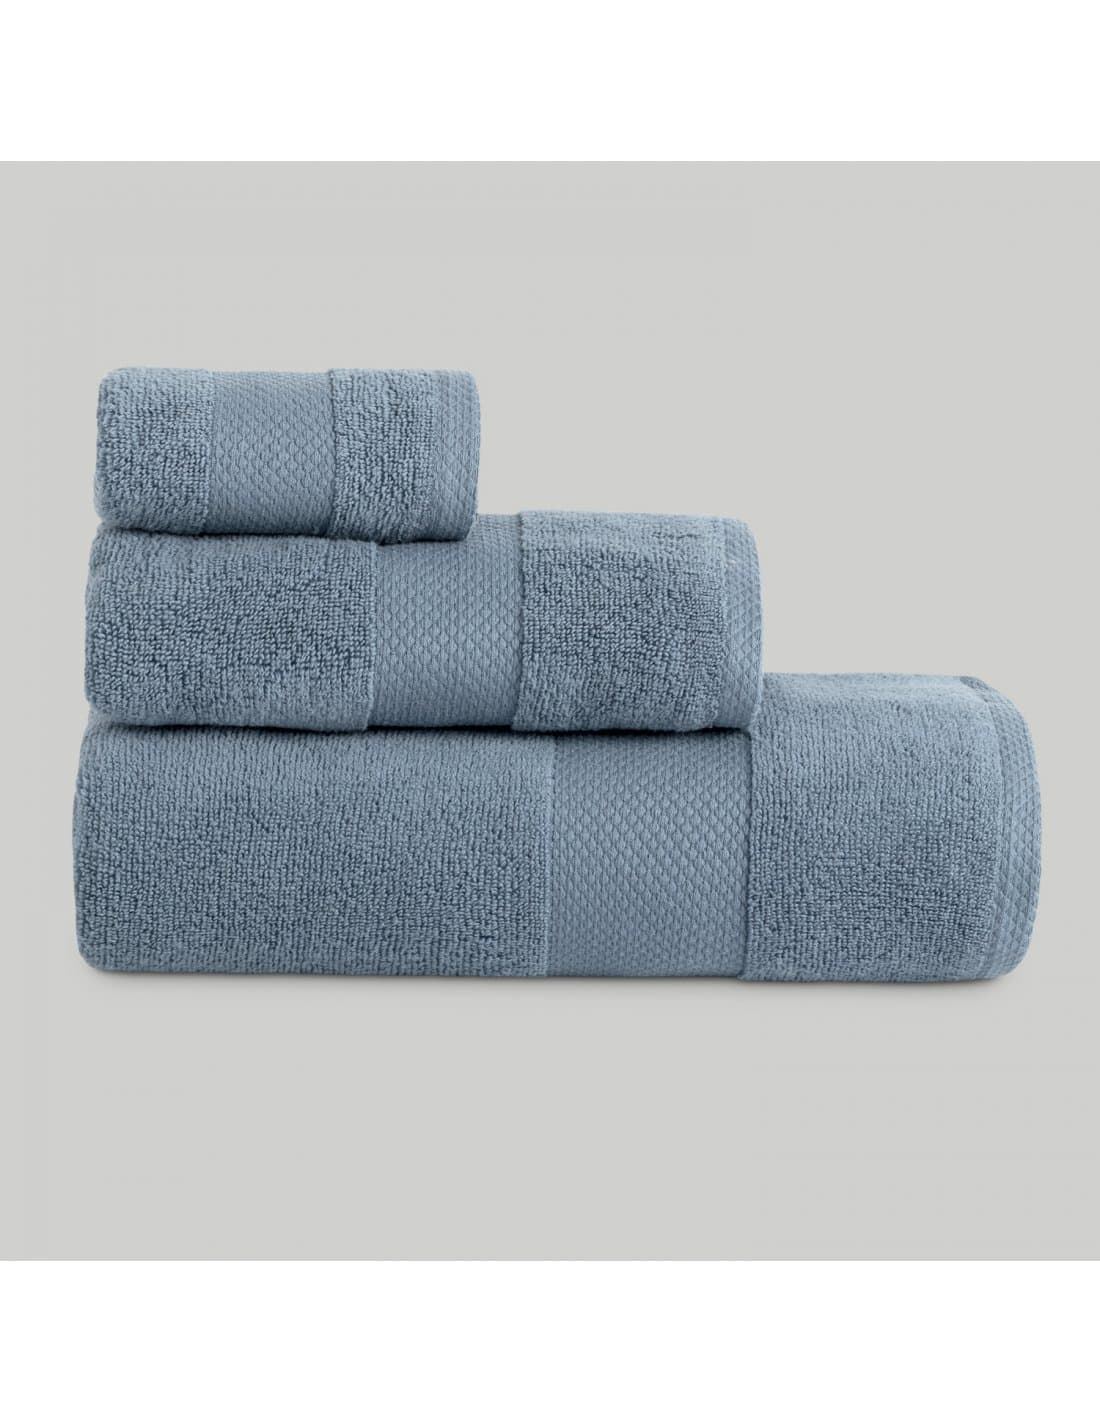 Juego toallas JADE azul - Imagen 1